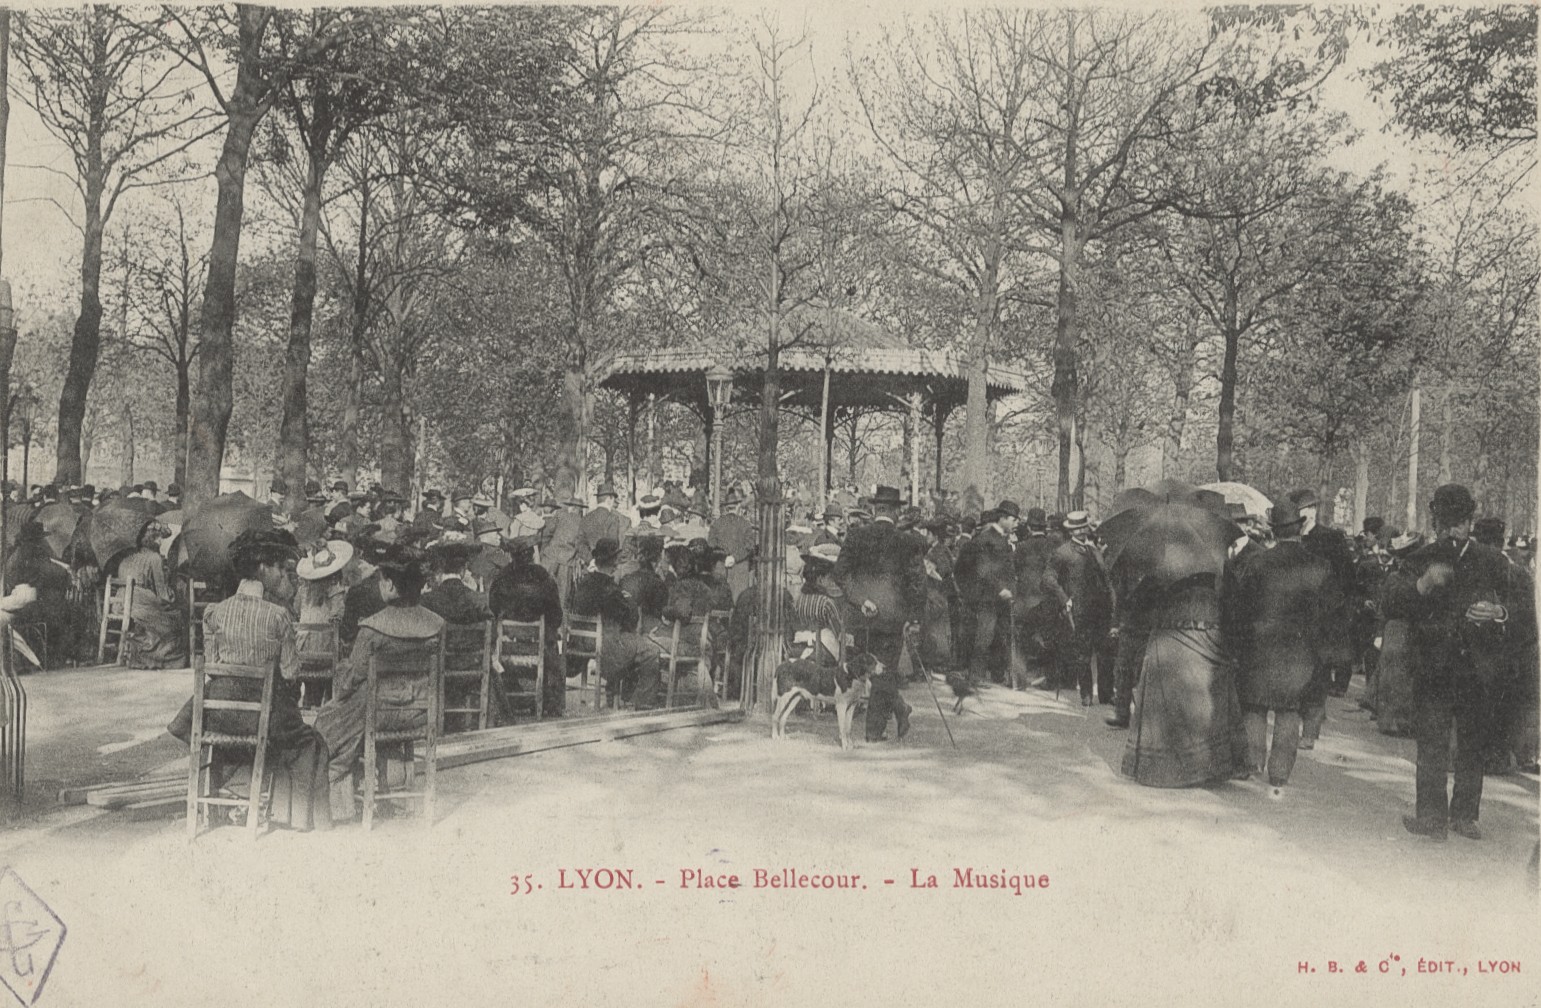 Lyon - Place Bellecour, la musique : carte postale NB (vers 1900, cote 4FI/1161)